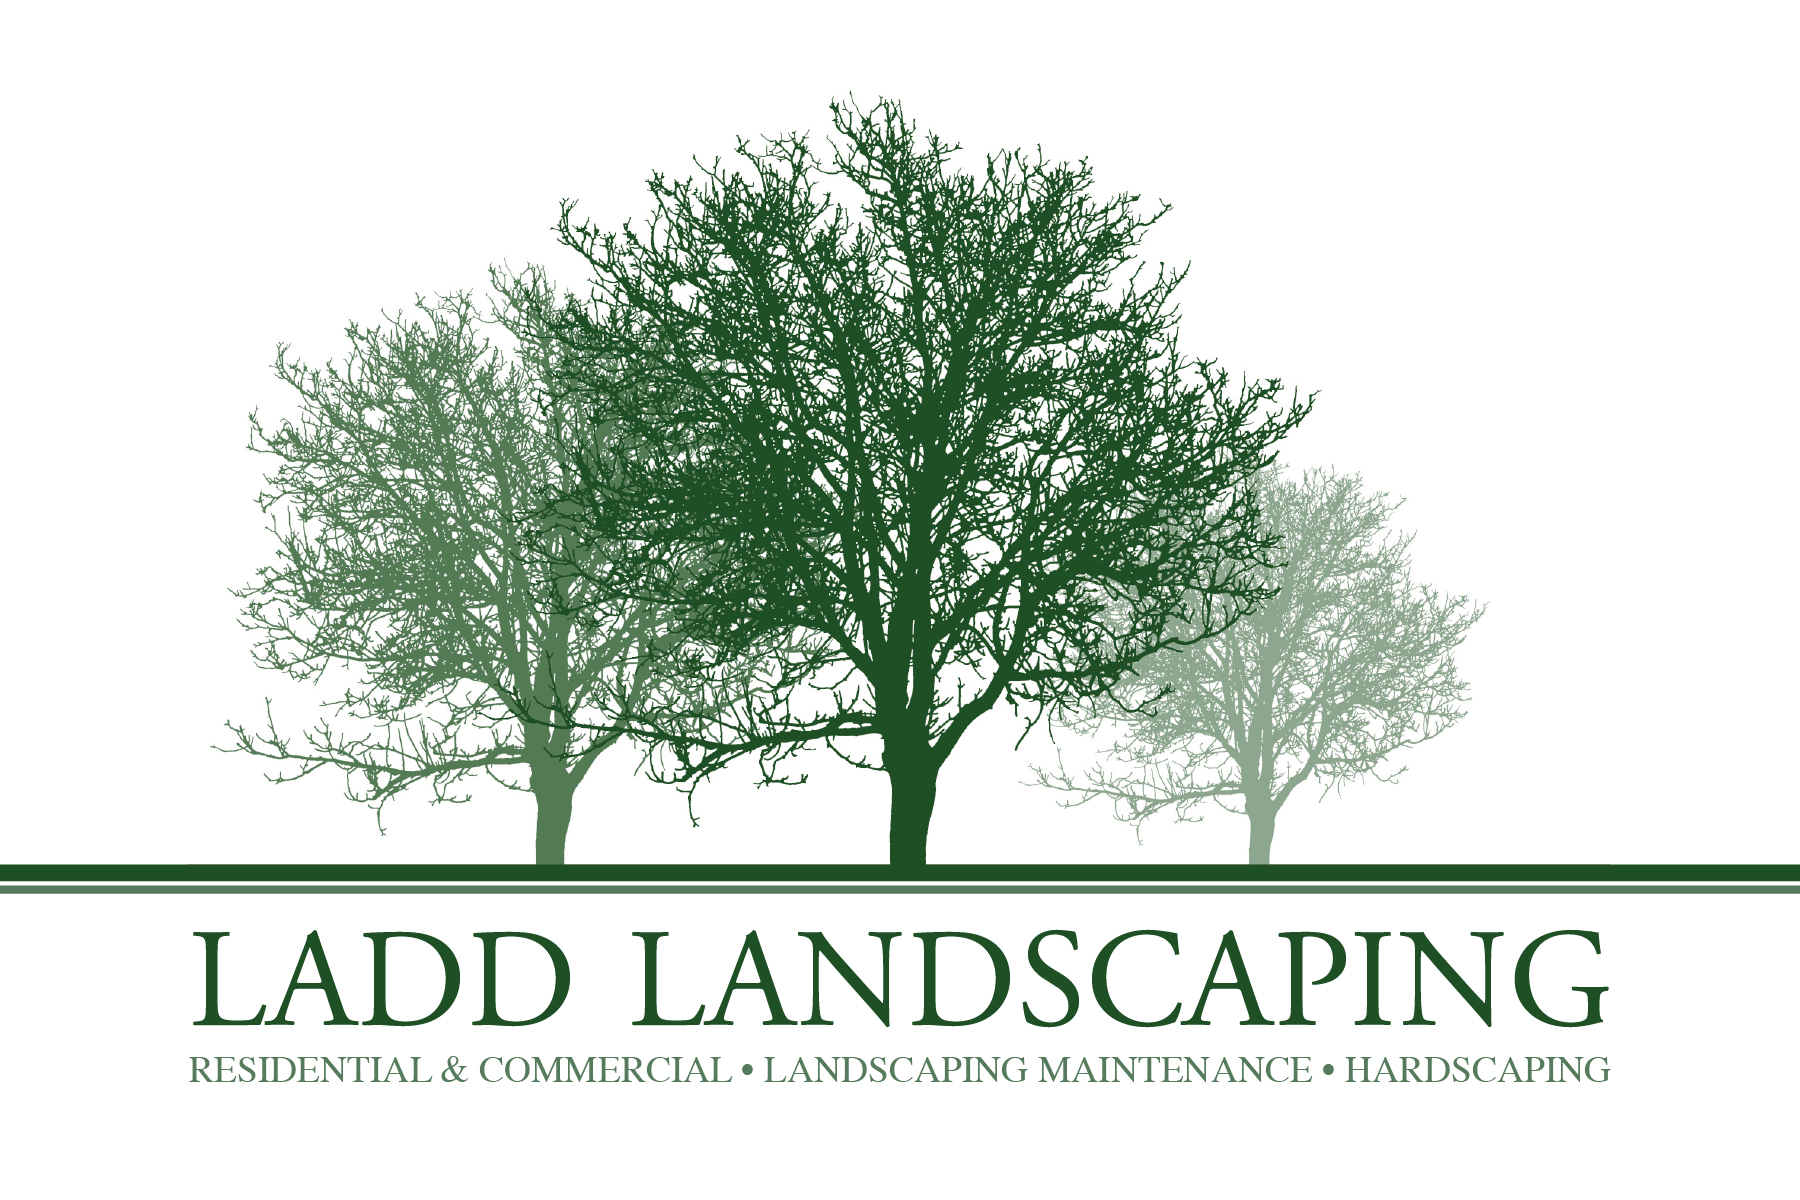 Landscaping Clipart Free. Lan